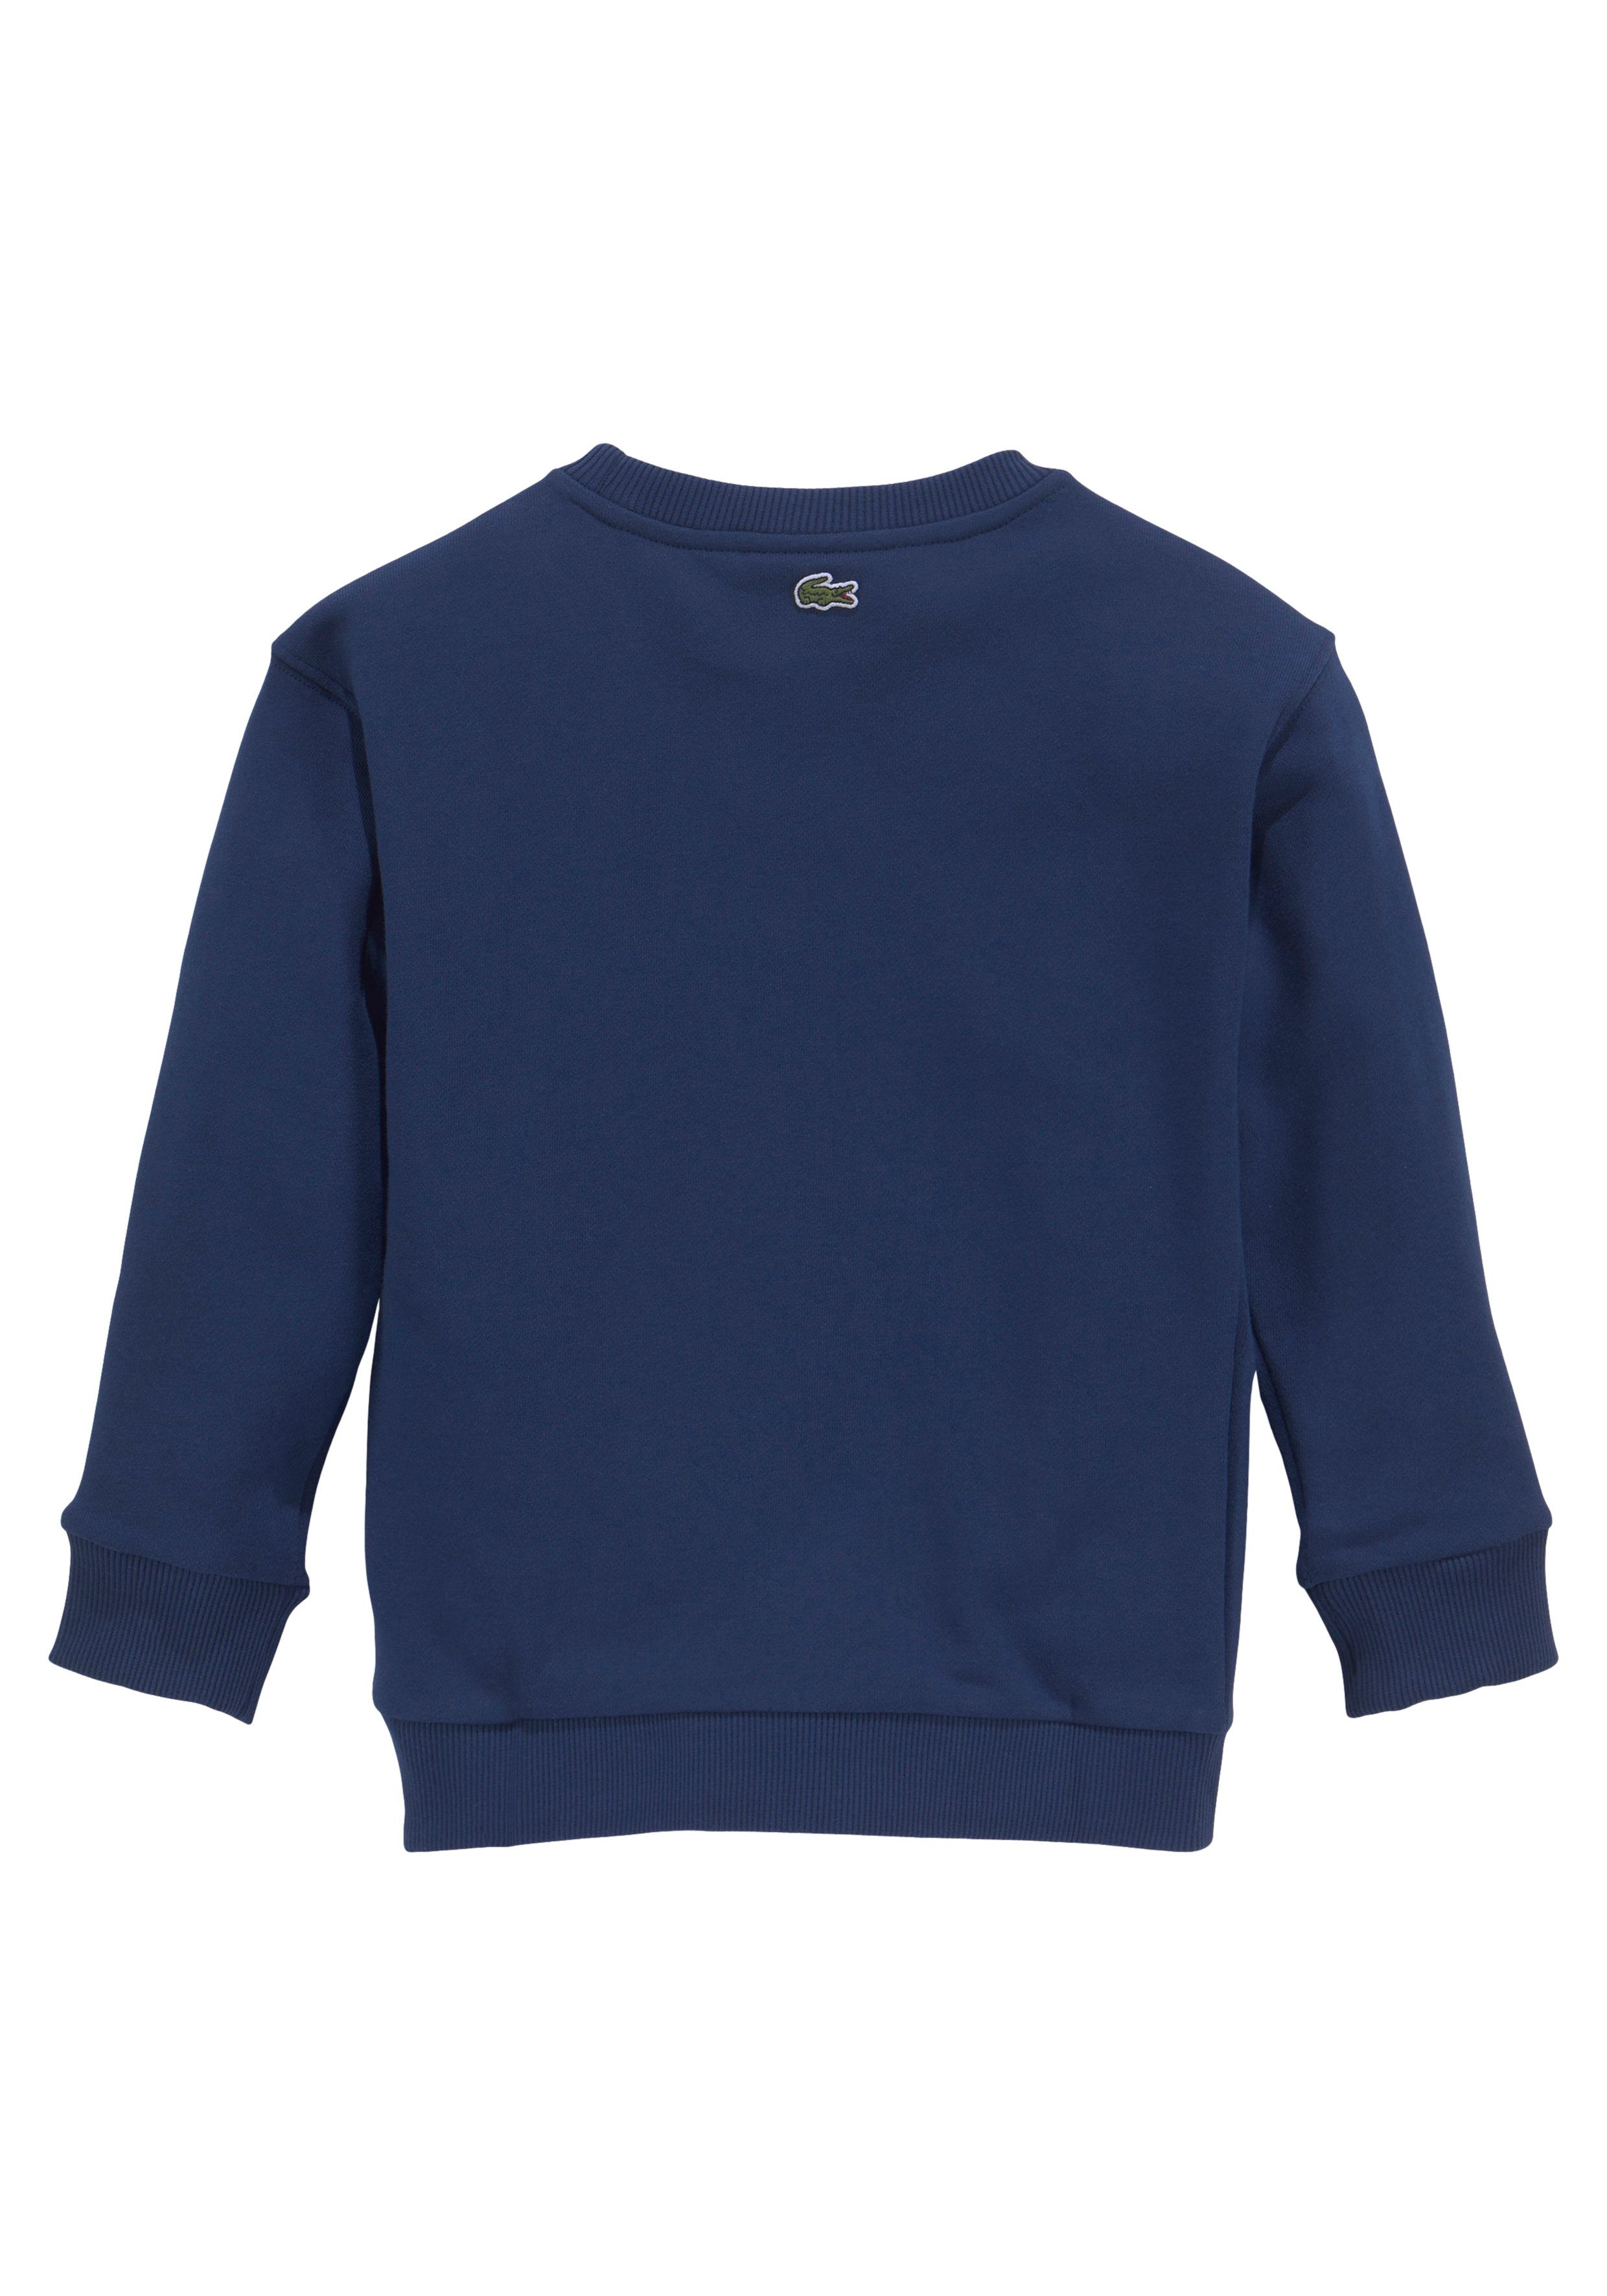 MiniMe,mit Labeldruck Kids Brust der auf Lacoste blau modernem Sweatshirt Junior Kinder